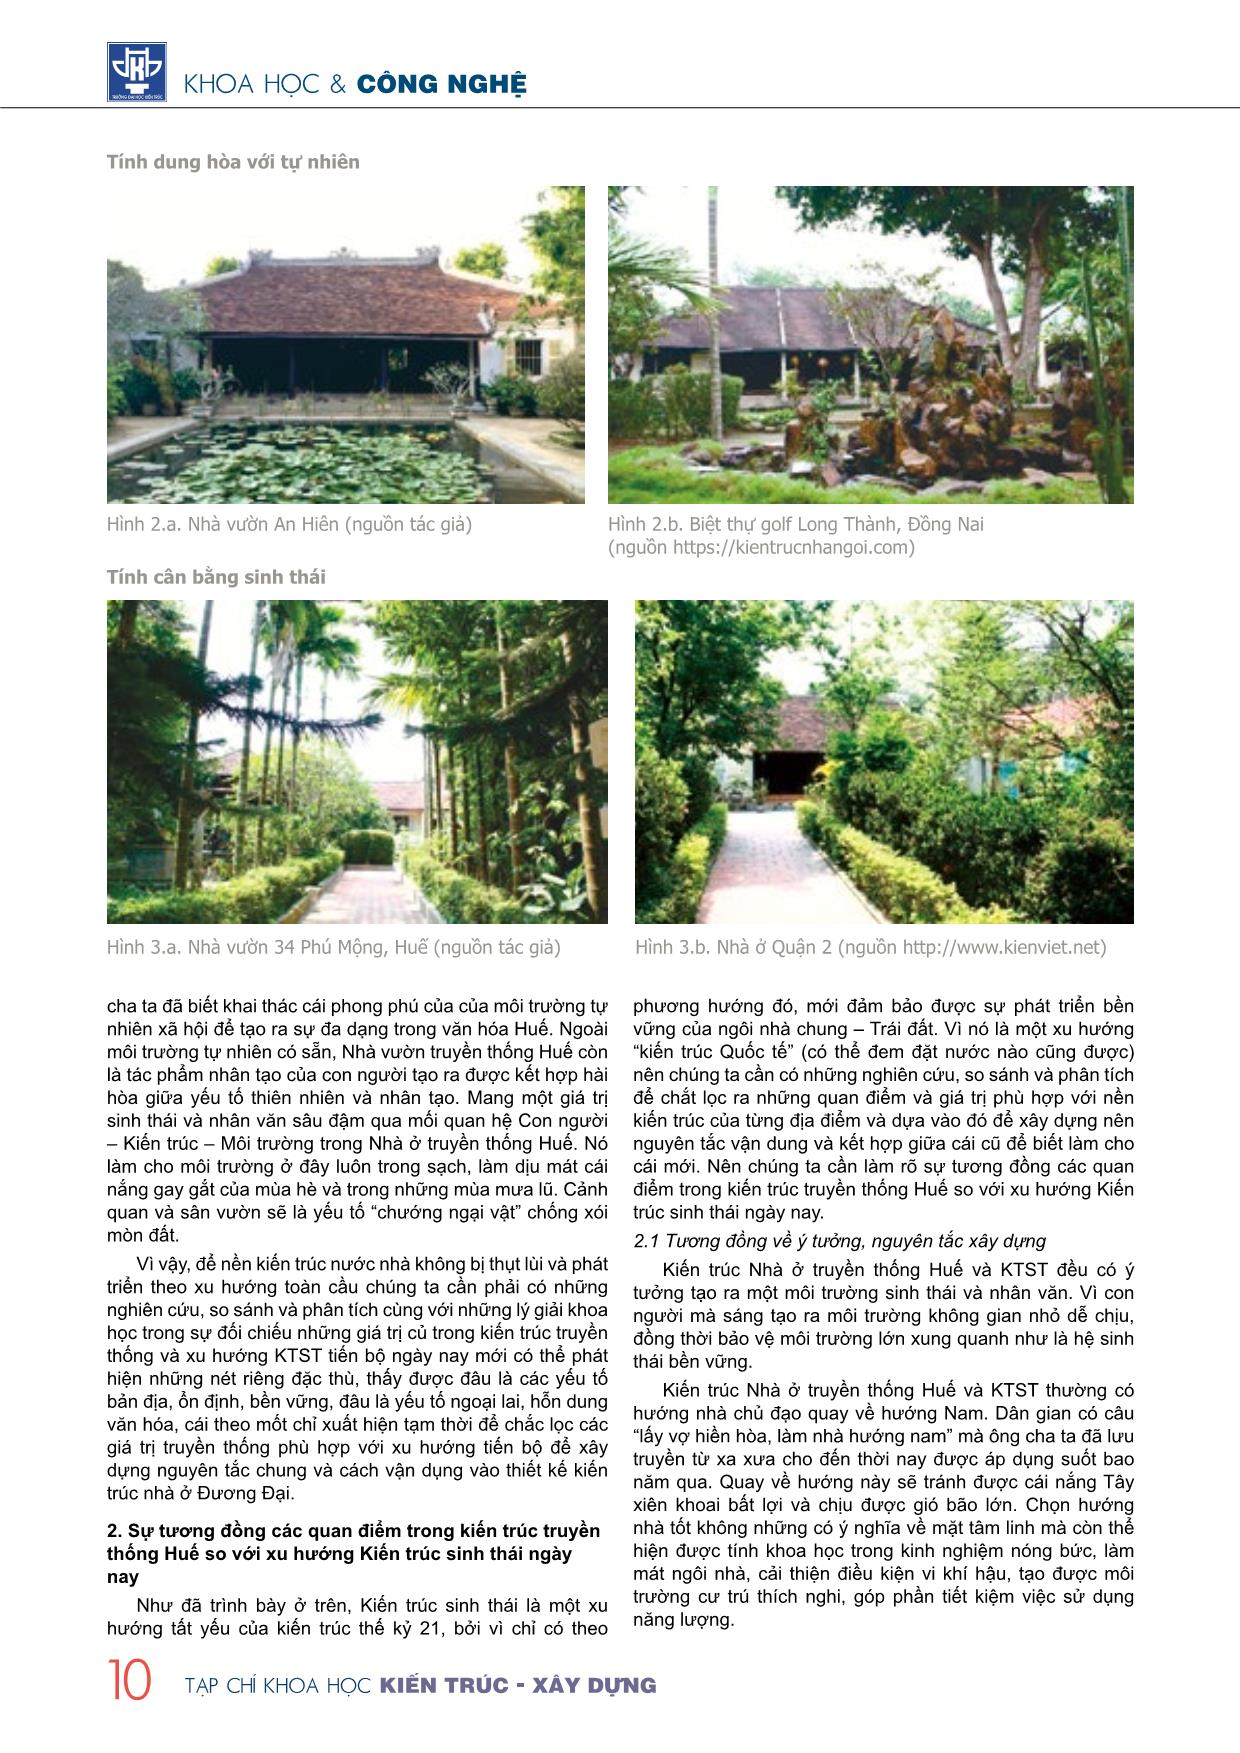 Sự tương đồng các quan điểm trong kiến trúc nhà ở truyền thống Huế so với xu hướng kiến trúc sinh thái ngày nay trang 2